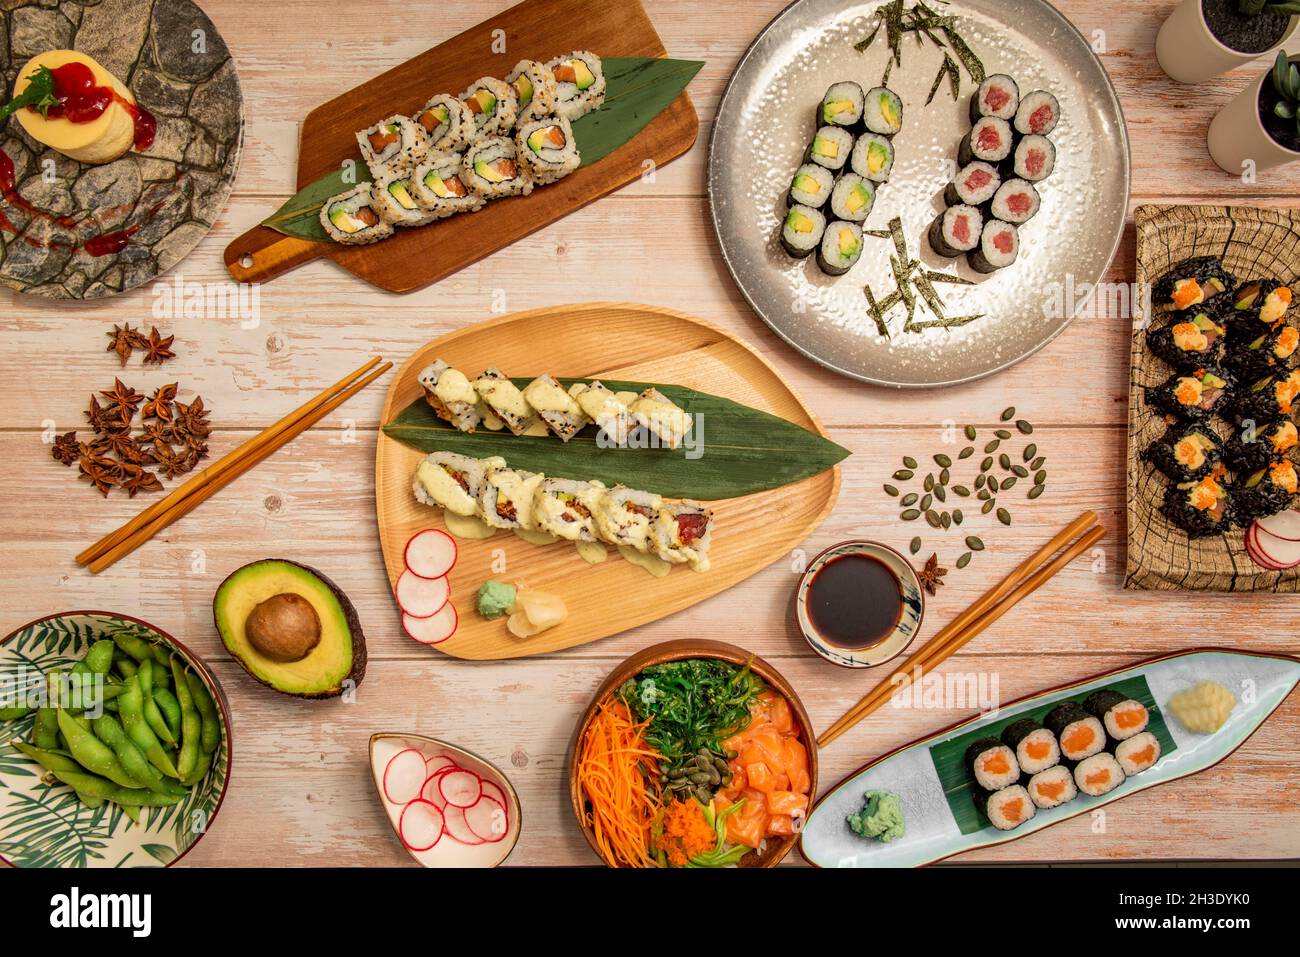 Vue de dessus de plats japonais, saumon maki, rouleau de californie uramaki avec graines de sésame, edamame, bol à saumon, salade wakame, anis étoilé,a Banque D'Images